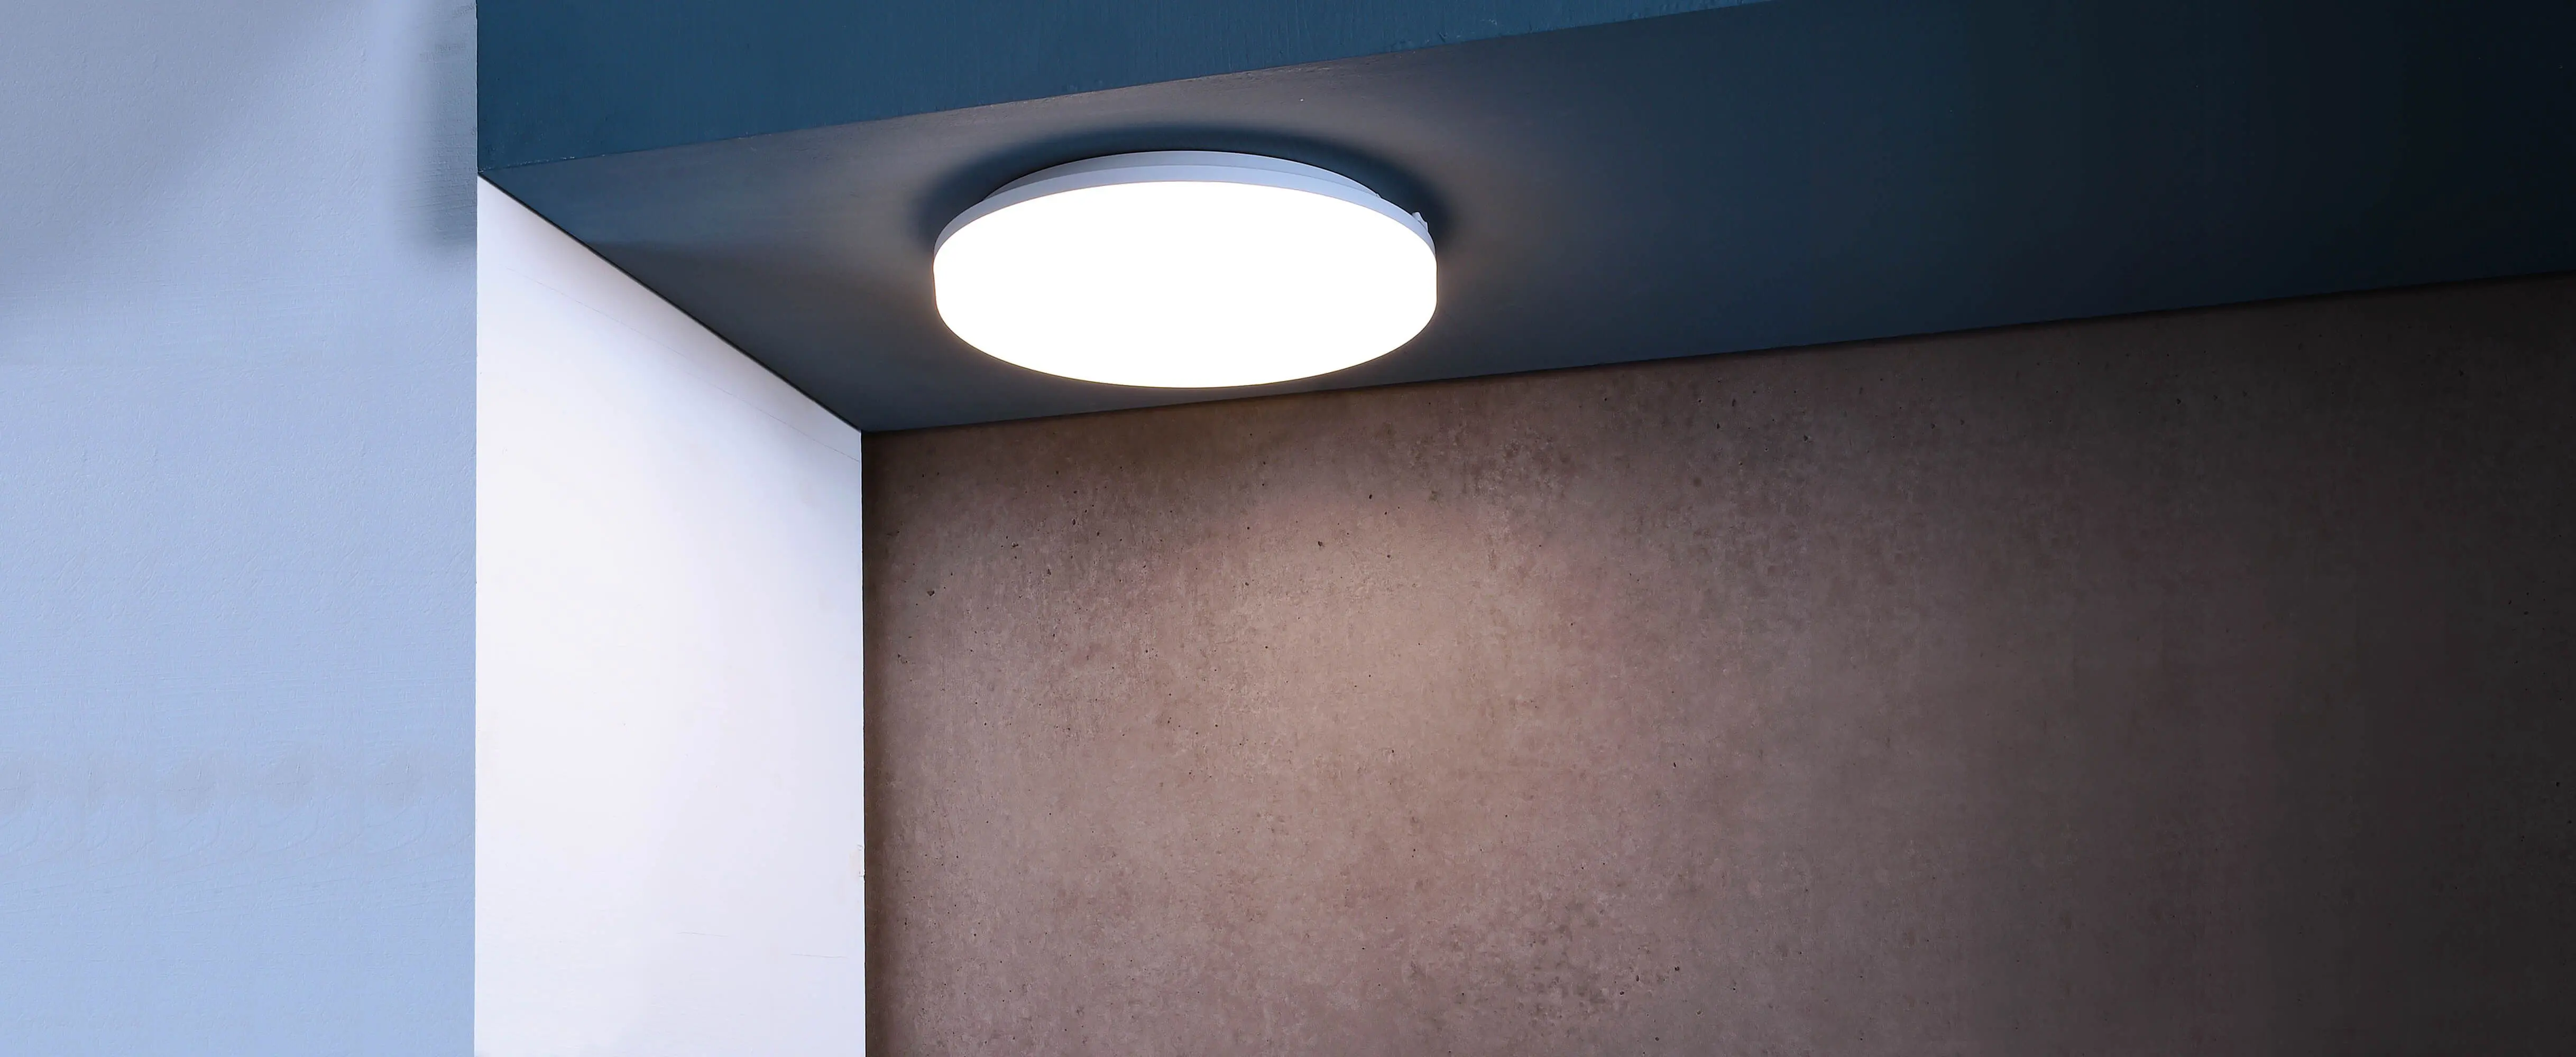 LED-Deckenlampe Altais Deluxe in weiß Ø 22cm